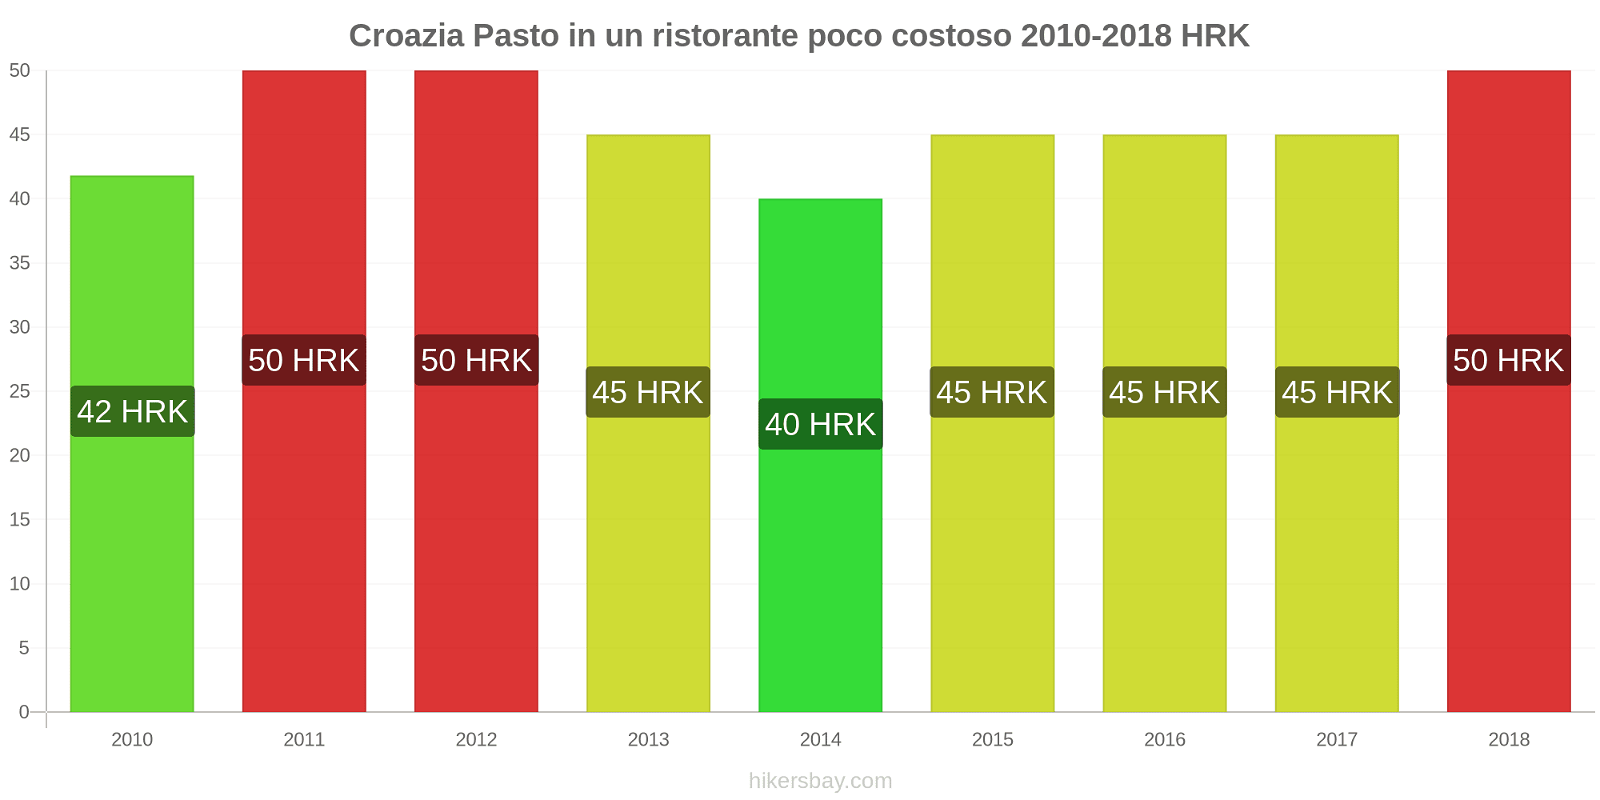 Croazia cambi di prezzo Pasto in un ristorante economico hikersbay.com